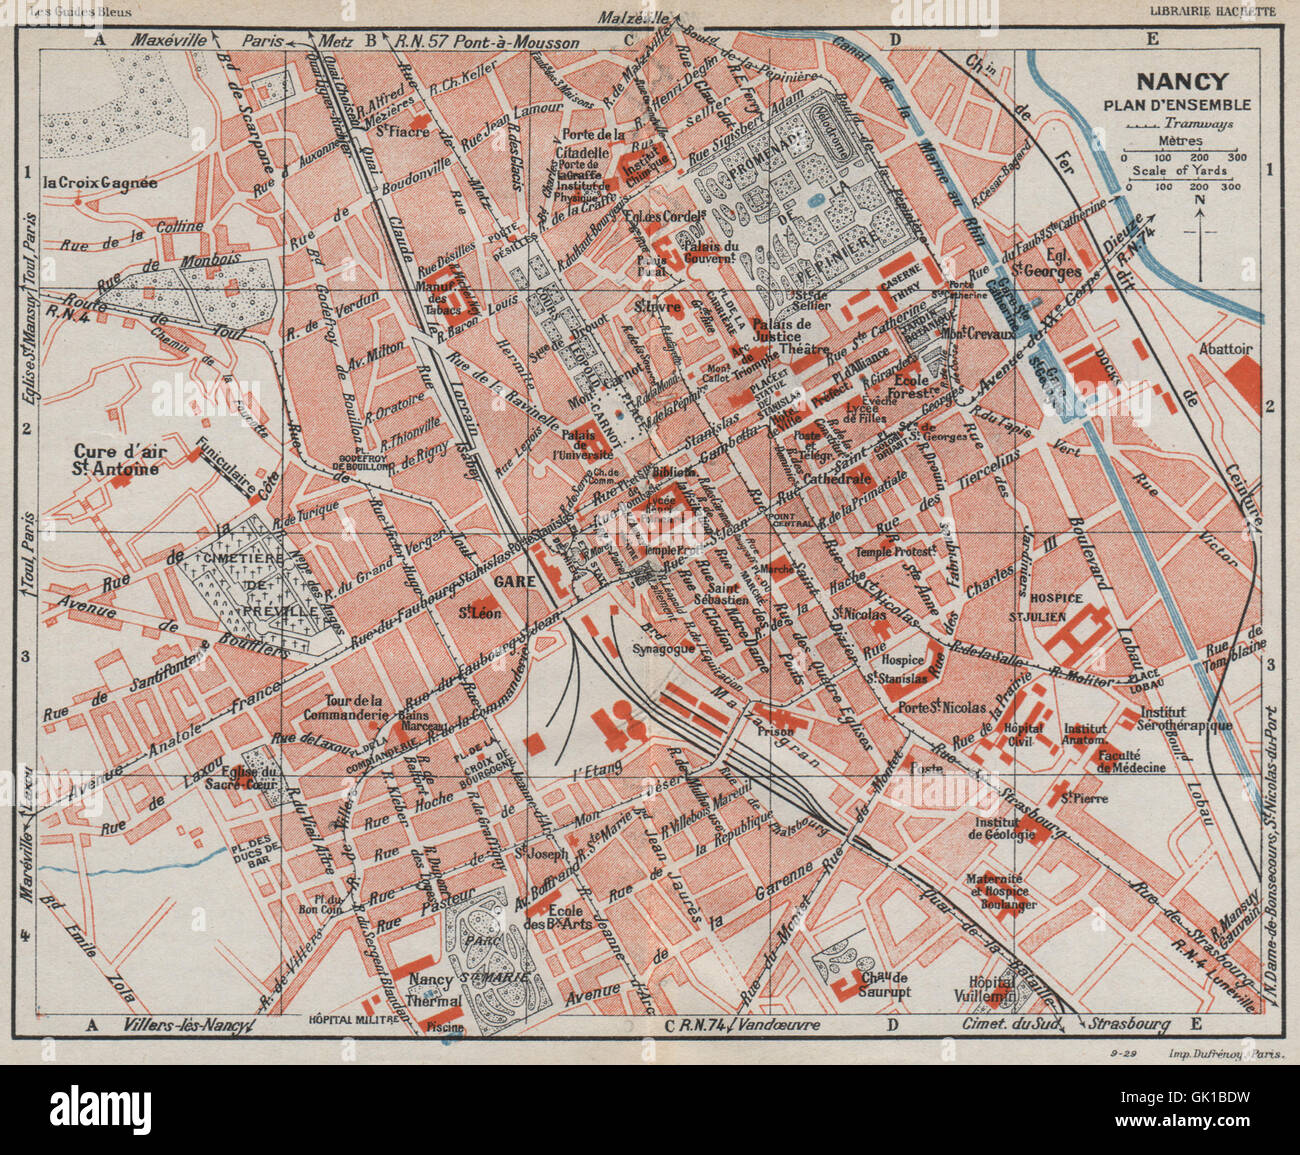 NANCY. Plan carte d'ensemble.Vintage town city ville map.Meurthe-et-Moselle  1930 Stock Photo - Alamy